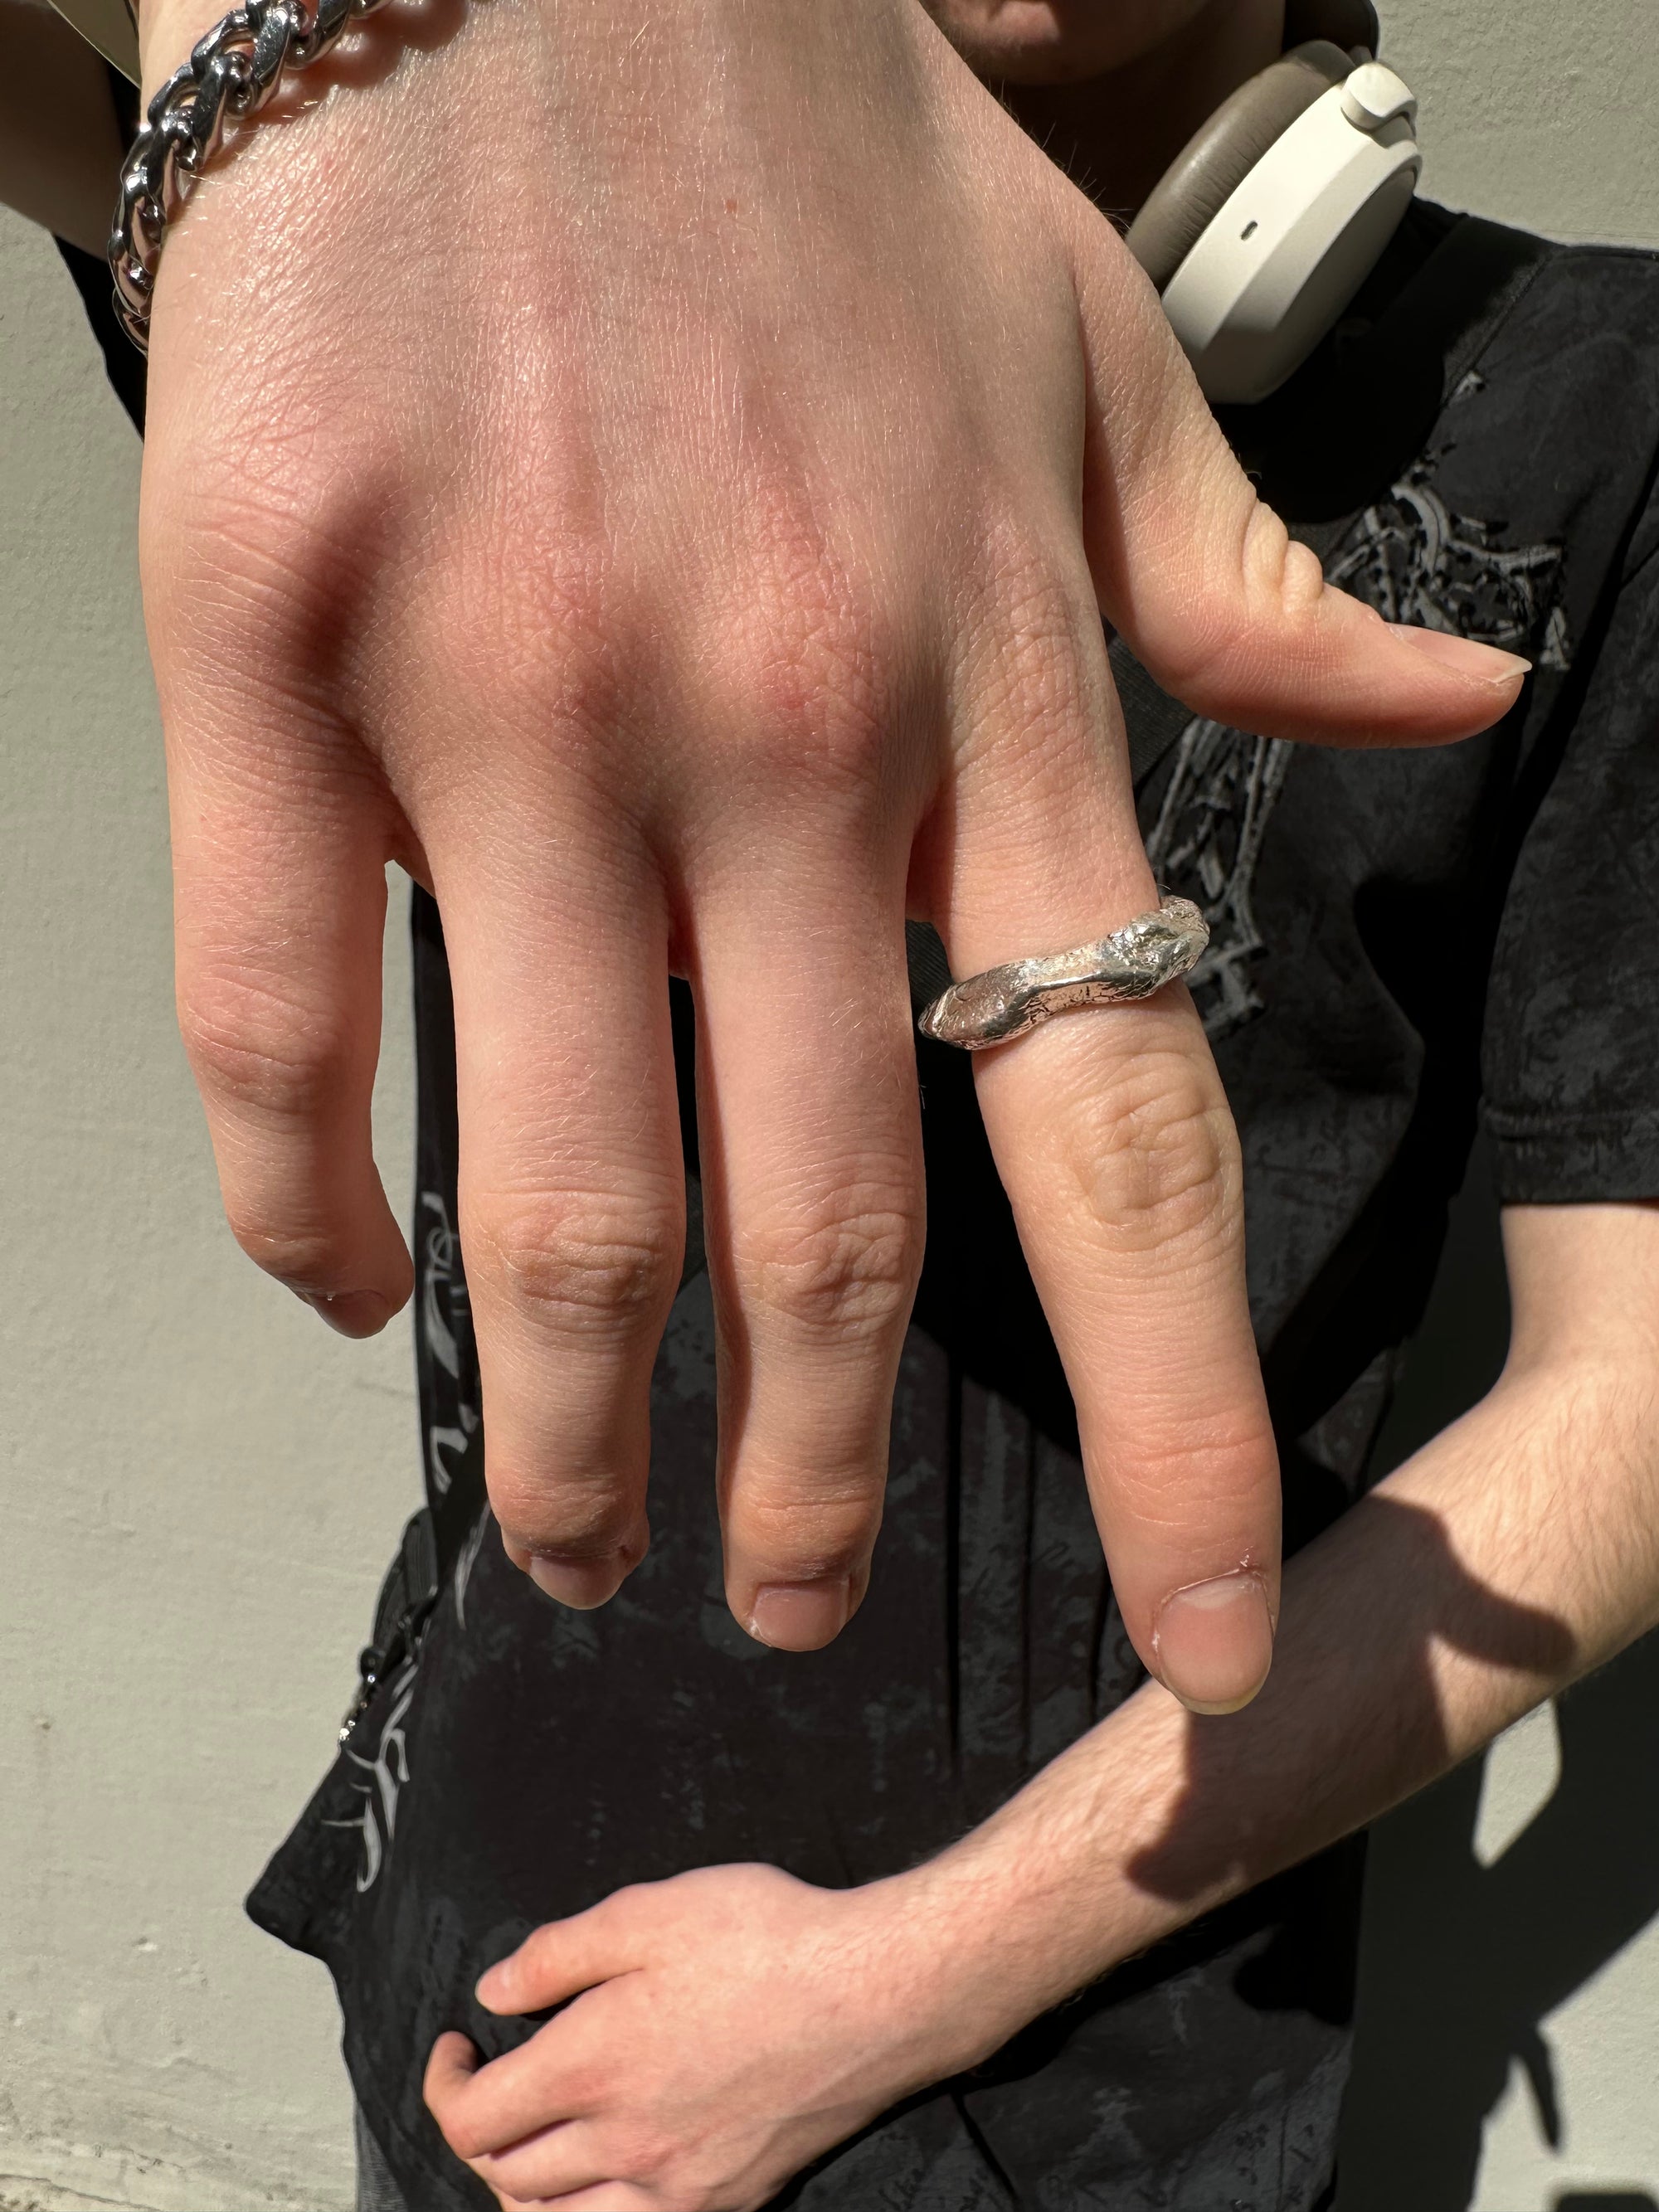 Ringsbyclausen Ring „Handgeformt“ Tragebild vom Zeigefinger vor Wand